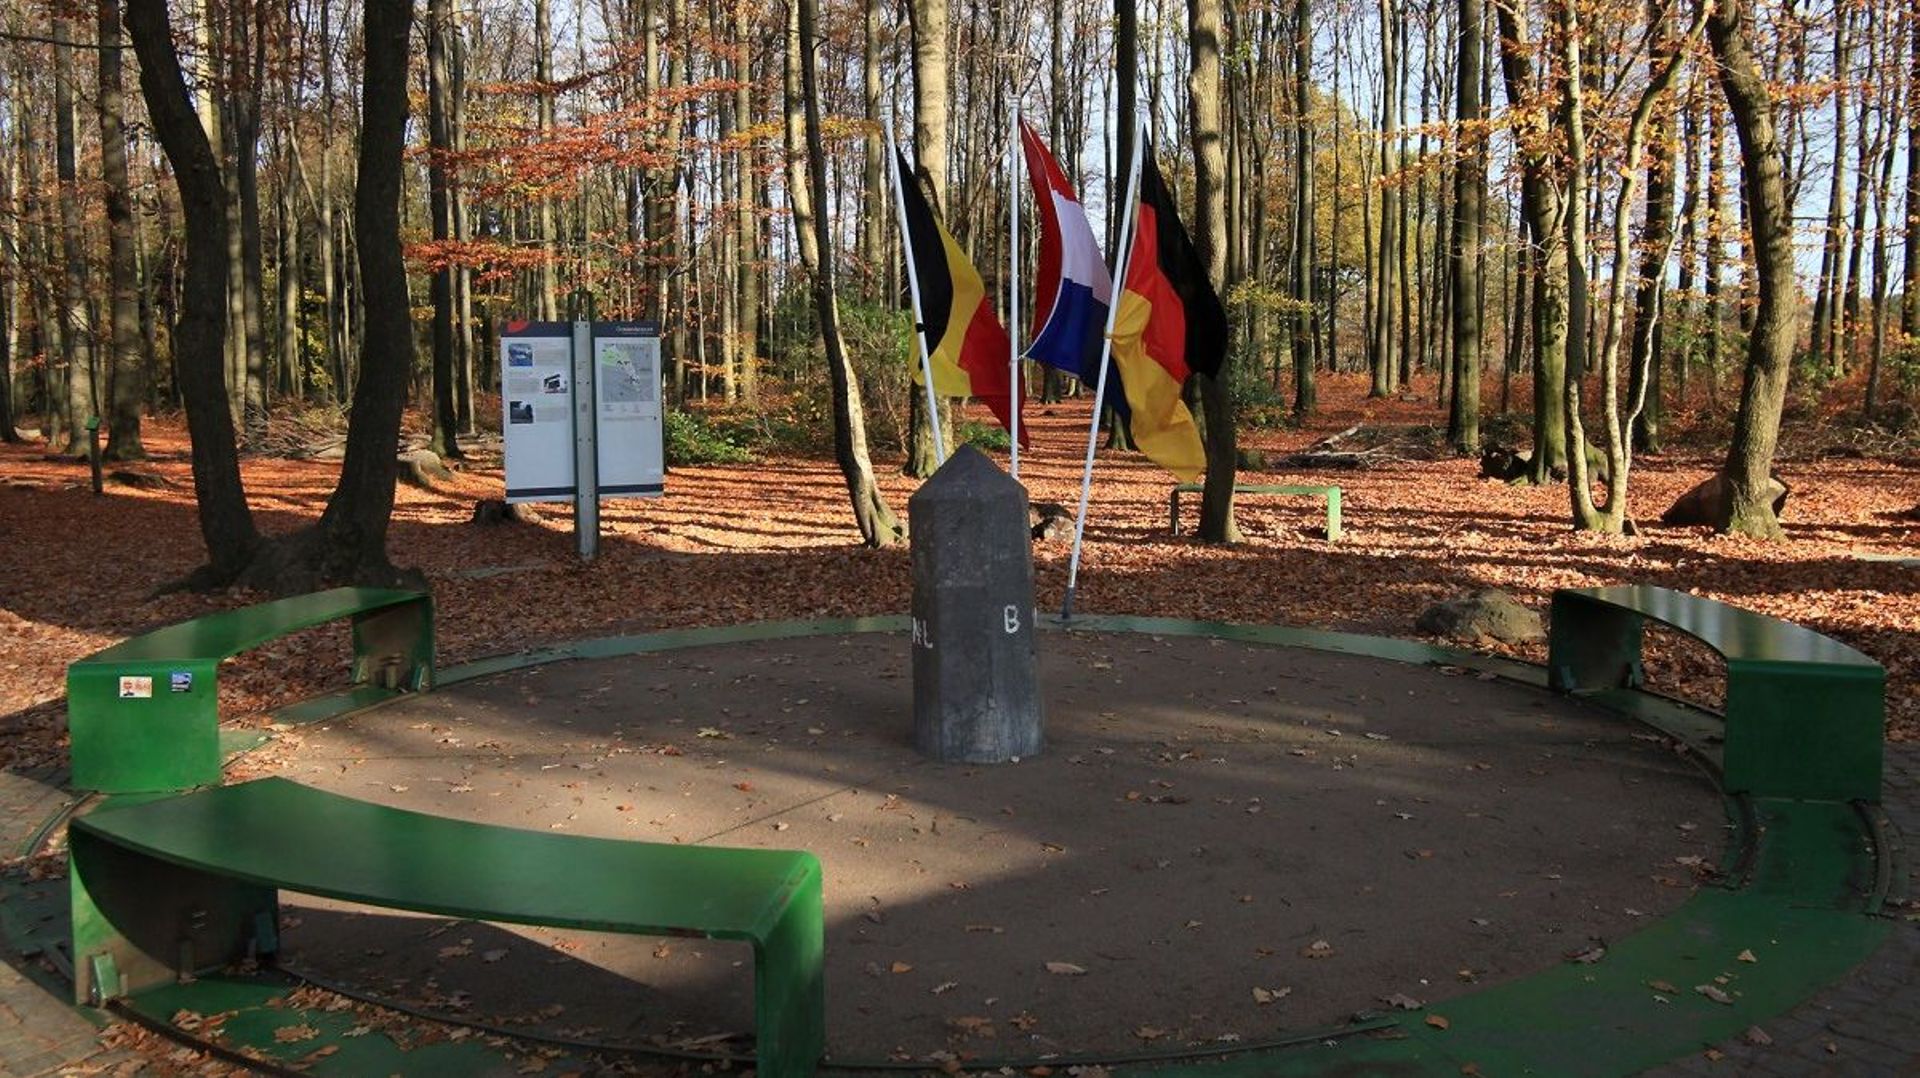 Sur le site des Trois Bornes, une borne marque le territoire des trois pays voisins que sont la Belgique, l’Allemagne et les Pays-Bas.